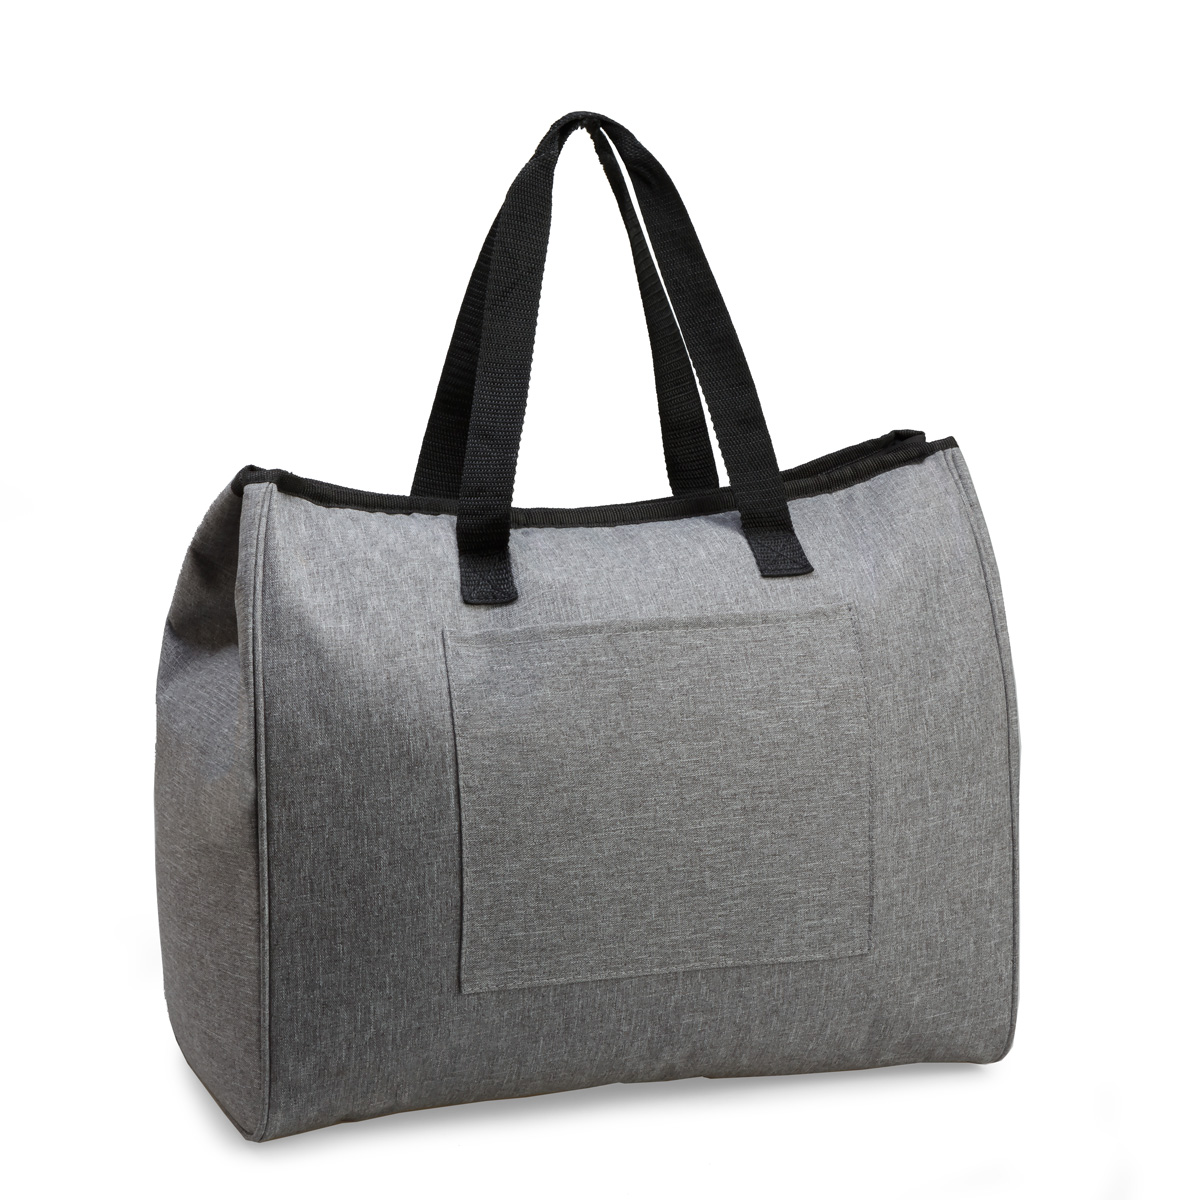 Slade Cooler Bag Product Image